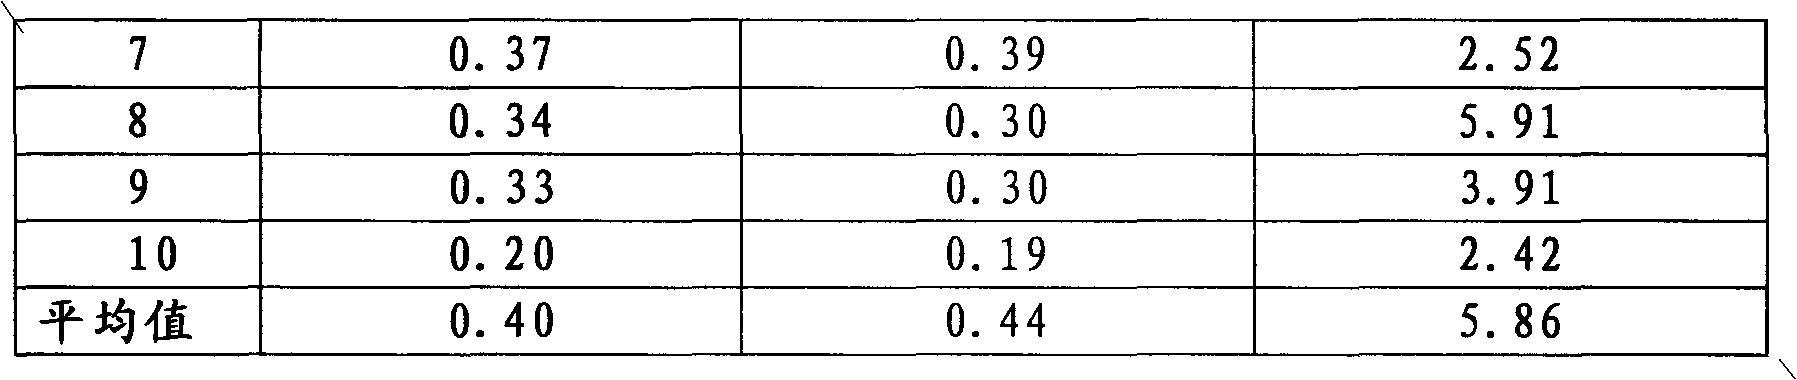 Method for measuring forest soil NO2 emission